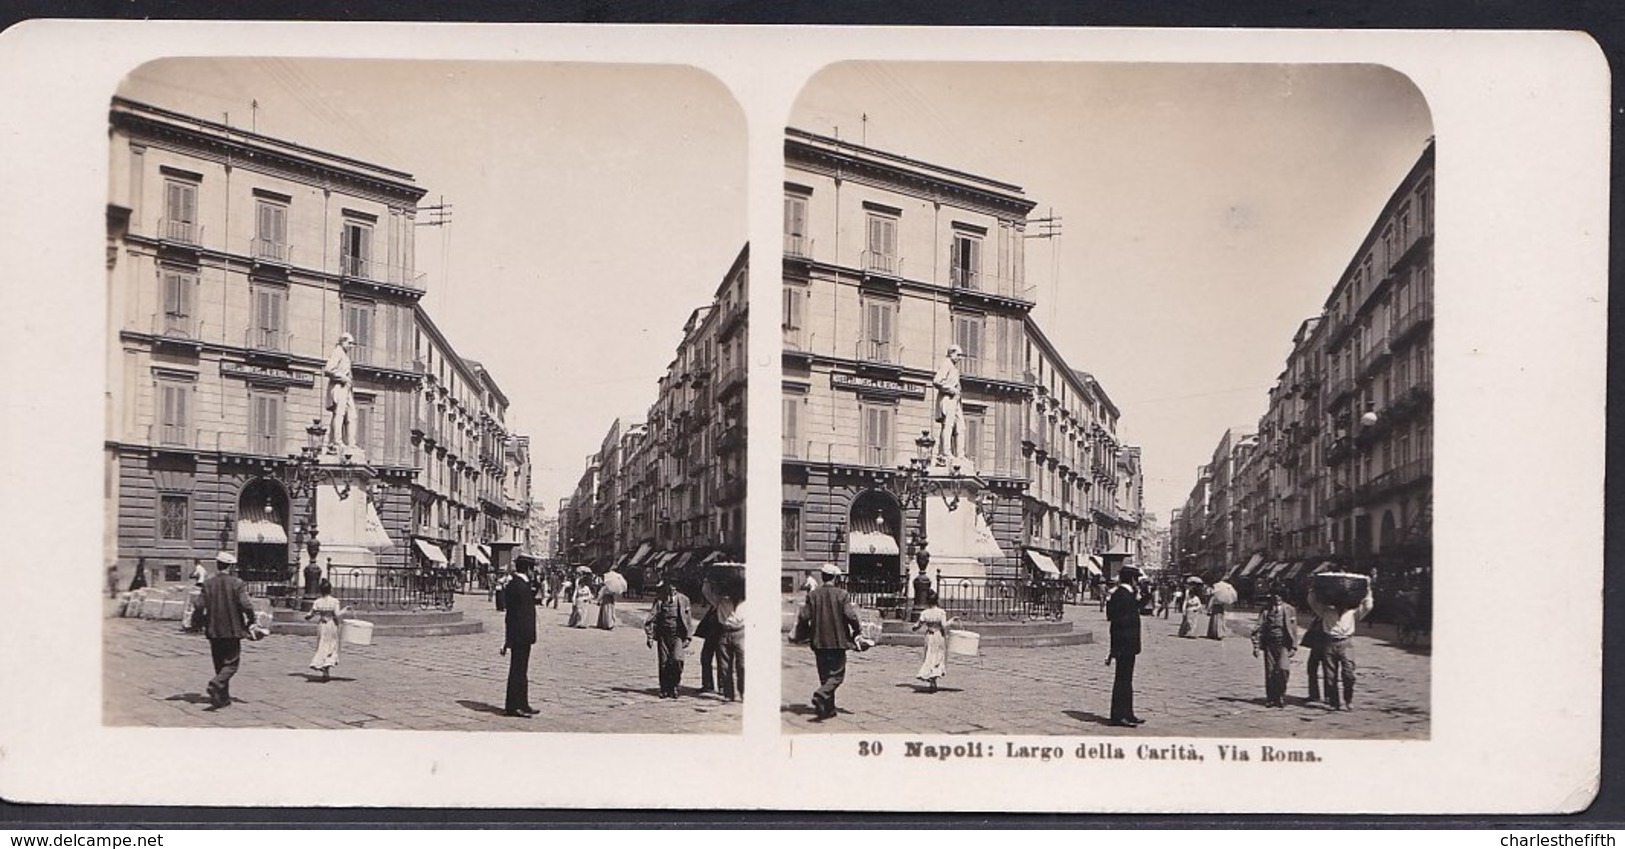 1906 VECCHIA FOTO STEREO ITALIA - CAMPANIA - ** NAPOLI ; LARGO DELLA CARITA - VIA ROMA ** RARE - Photos Stéréoscopiques